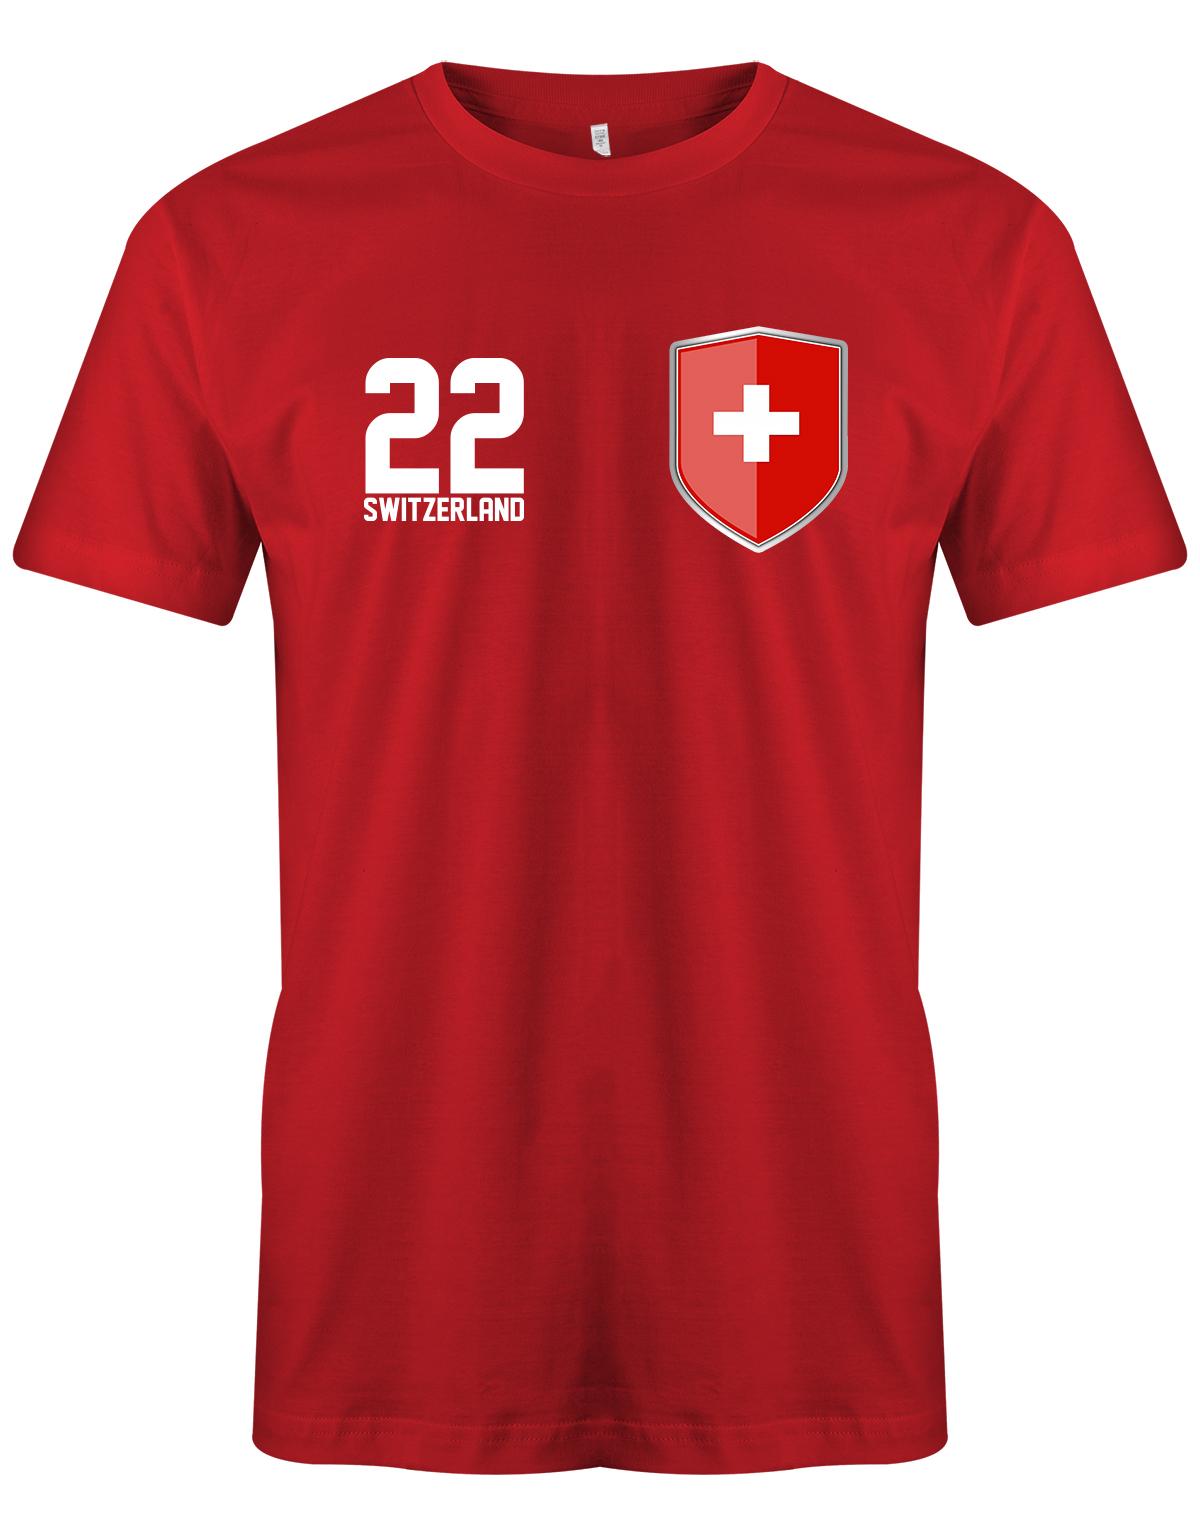 Switzerland-22-Wappen-Herren-Rot